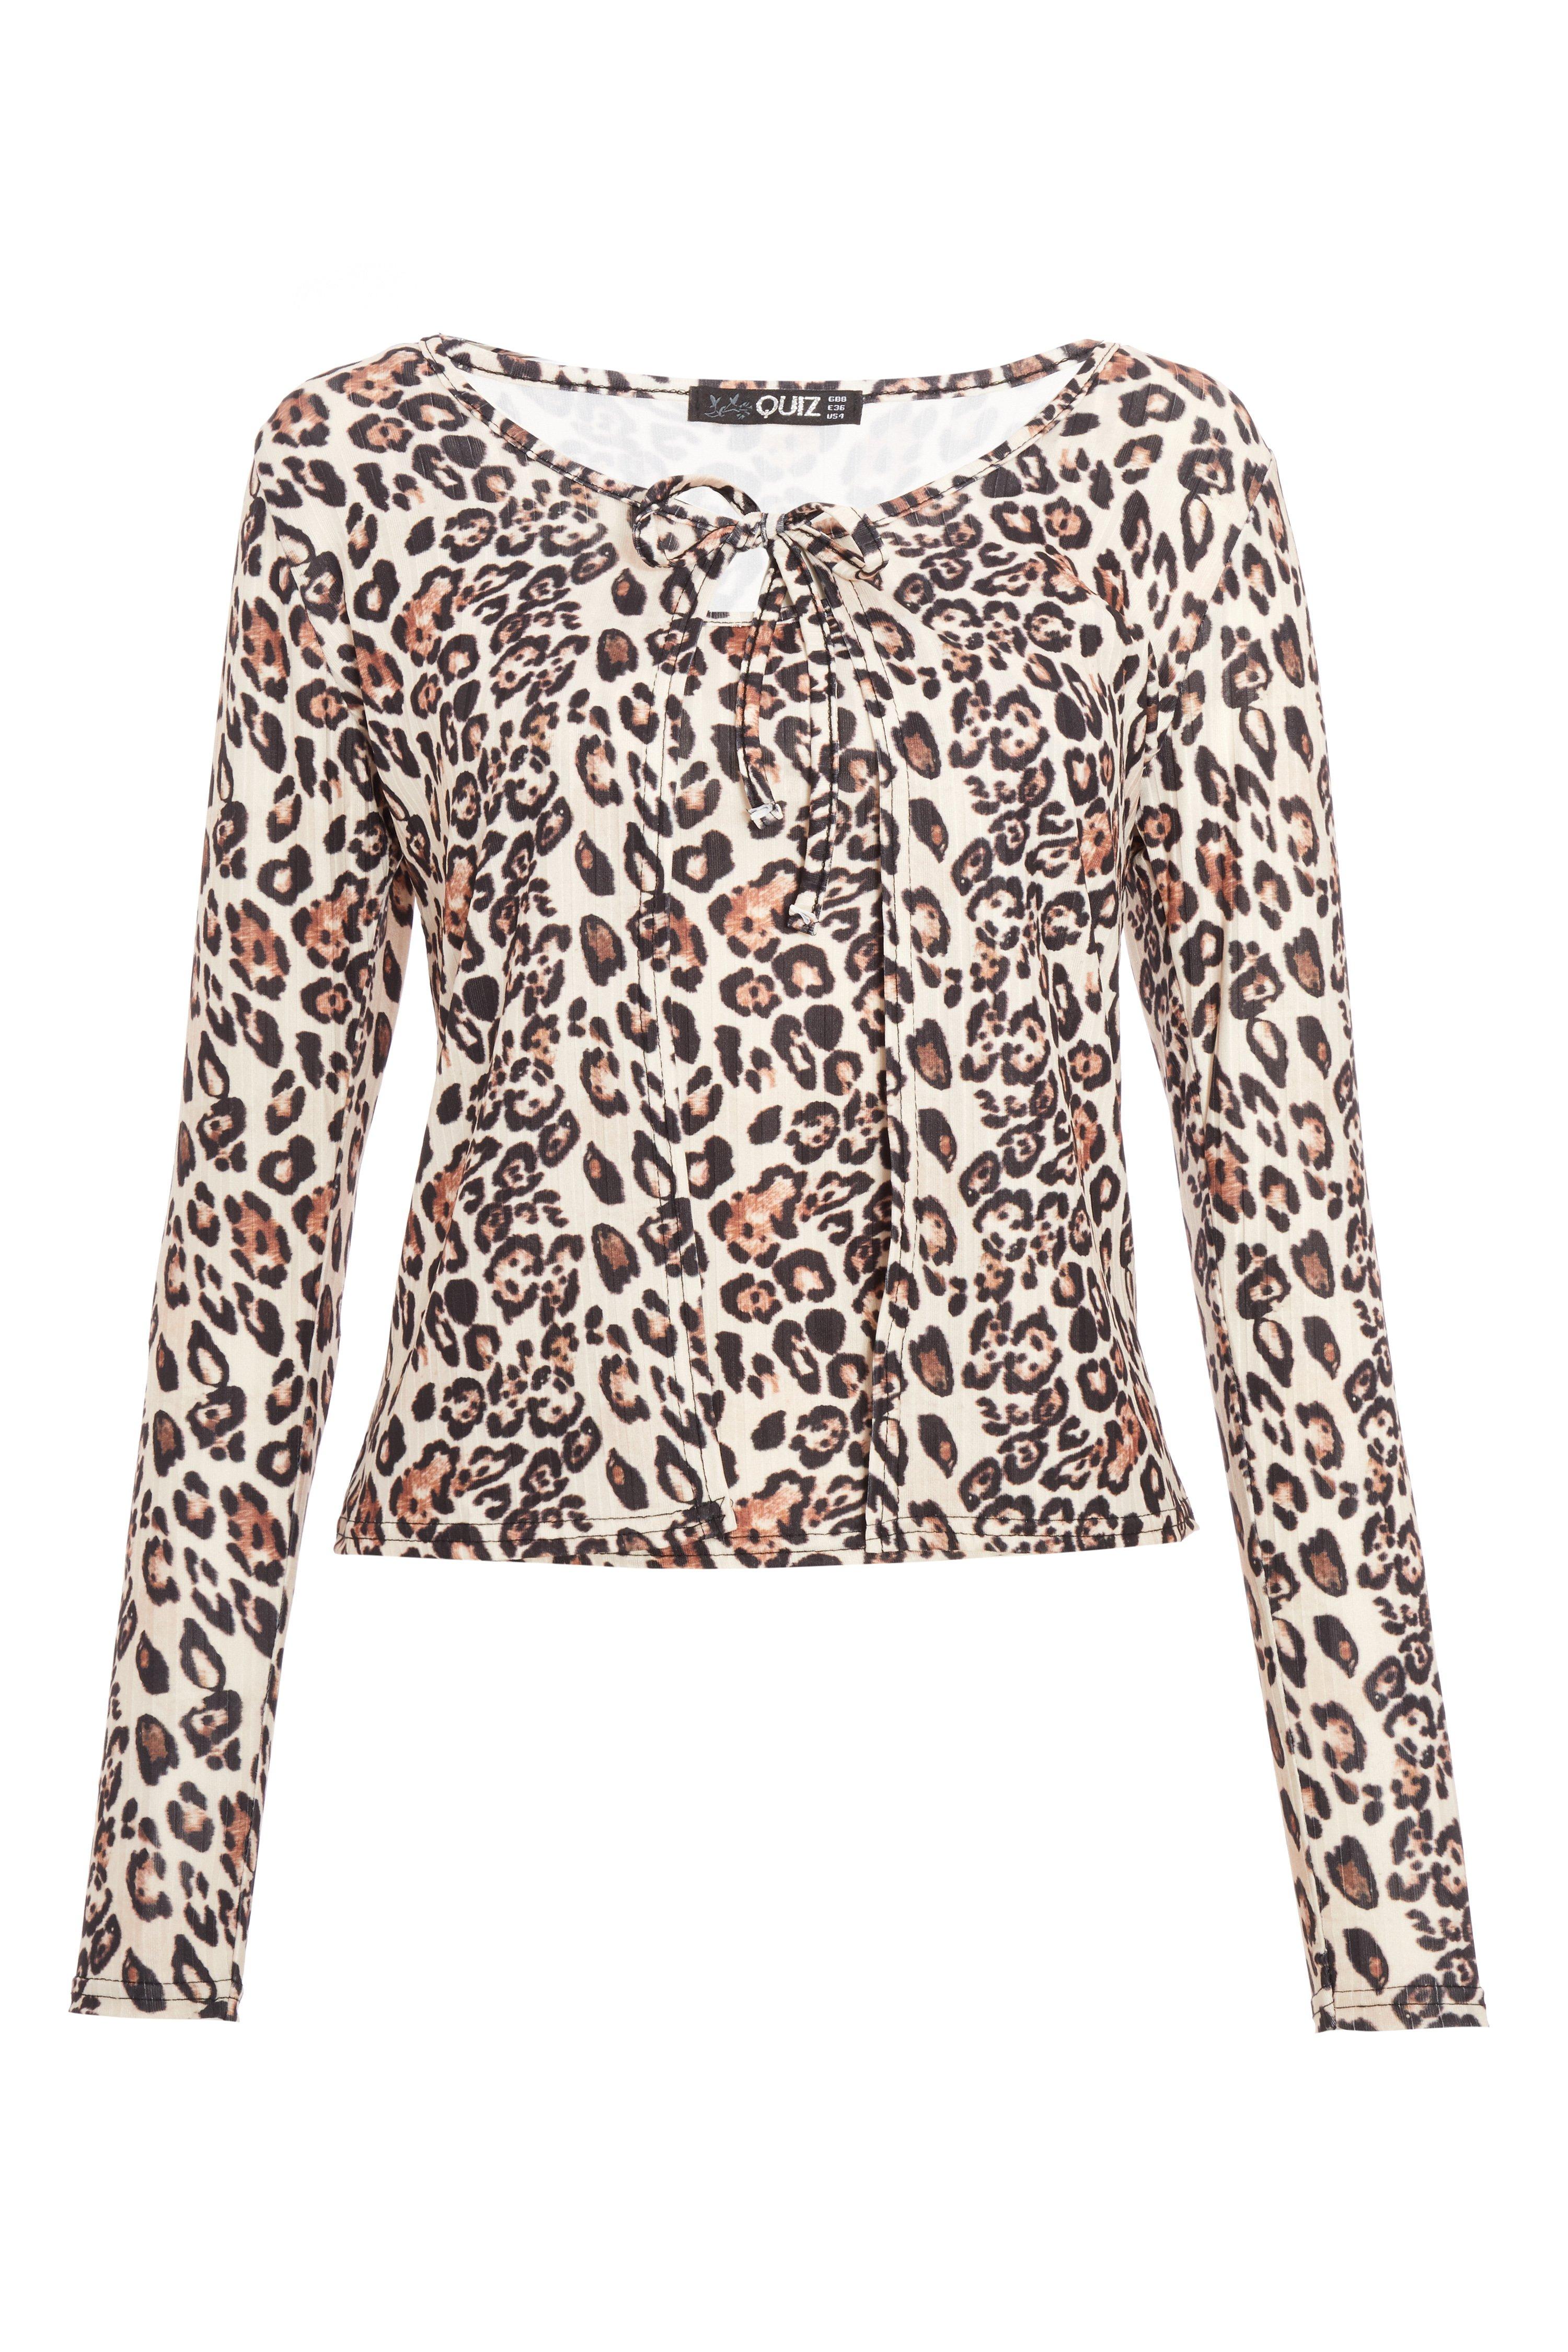 Cream Leopard Top & Cardigan Set - Quiz Clothing